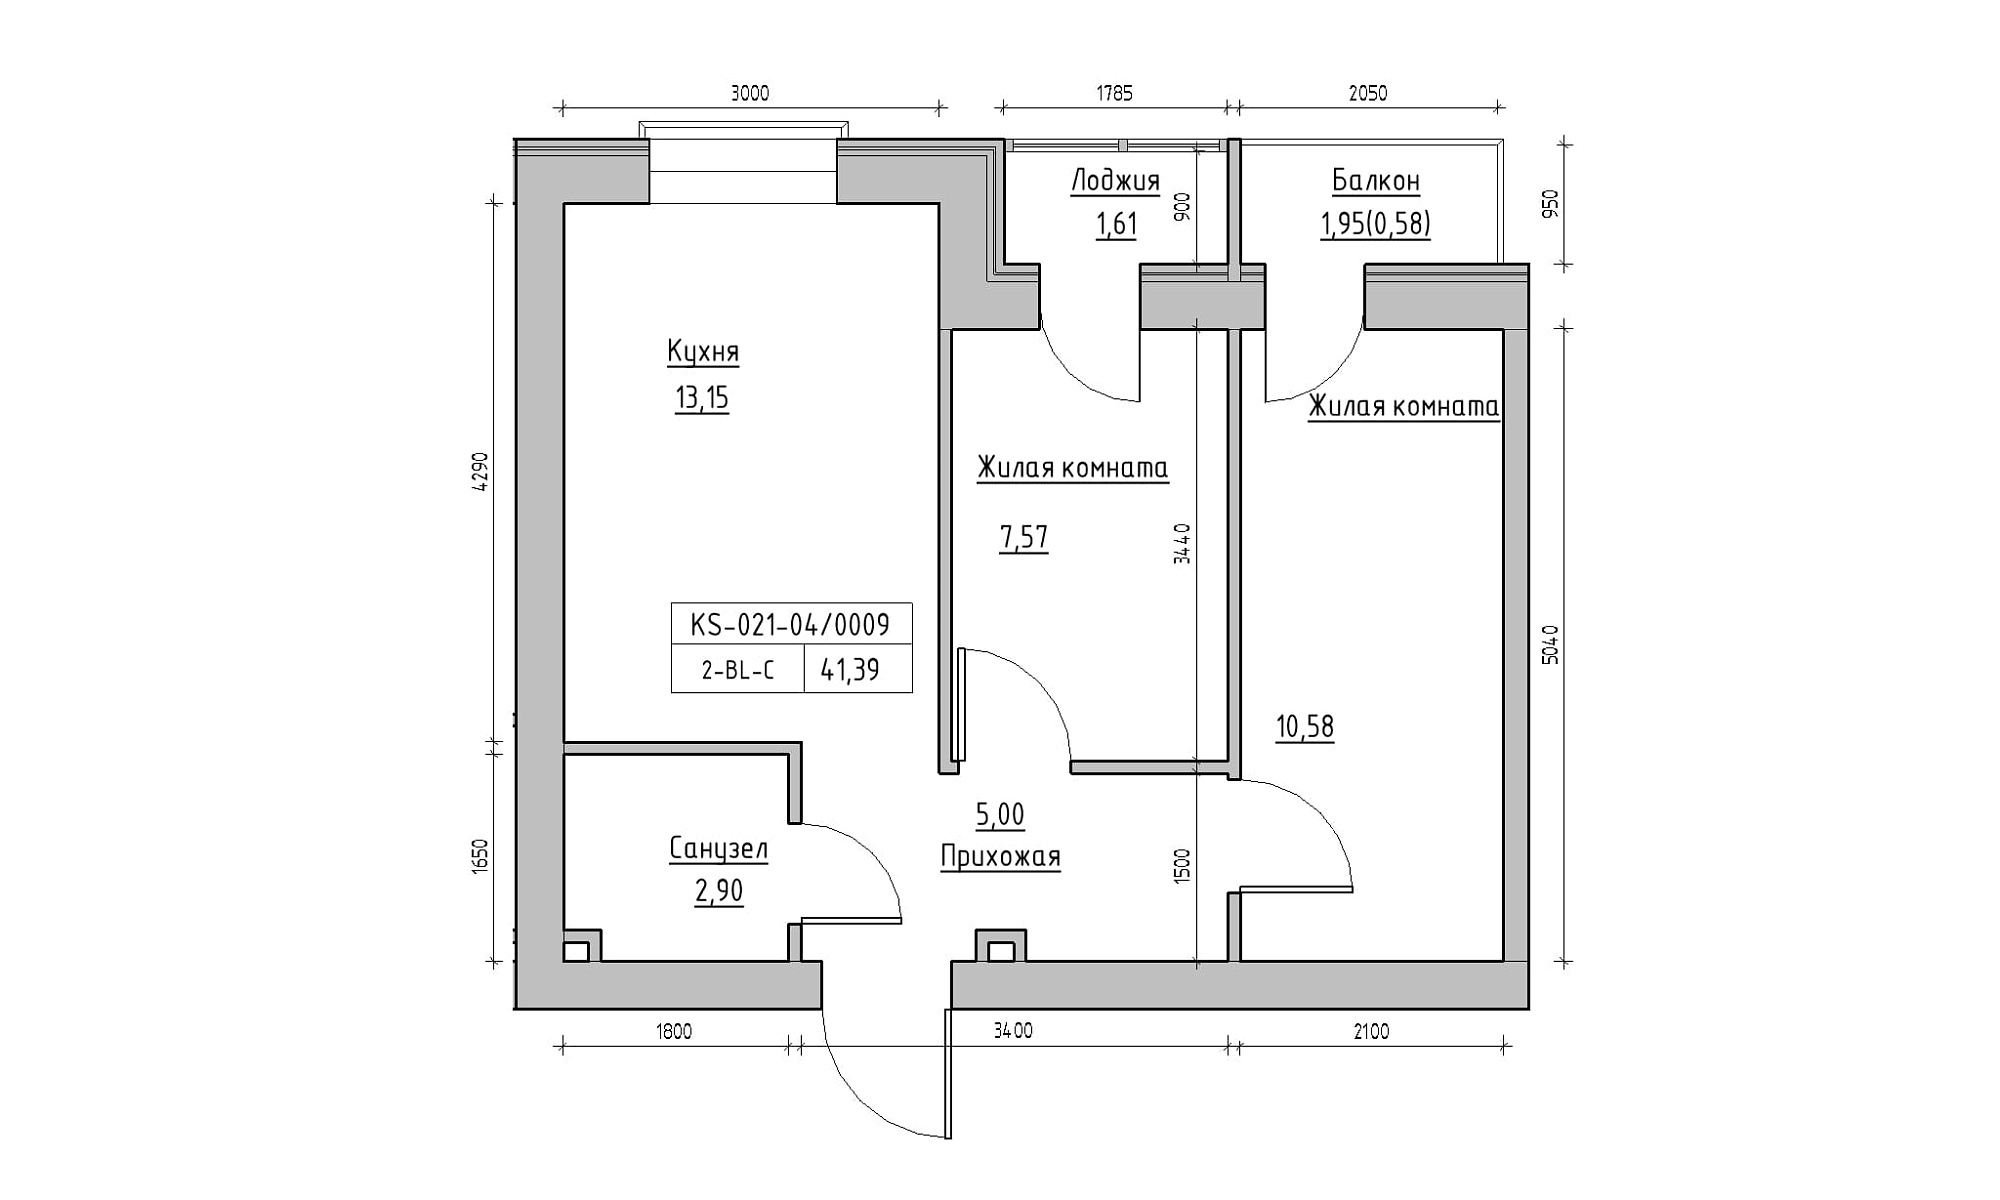 Планування 2-к квартира площею 41.39м2, KS-021-04/0009.